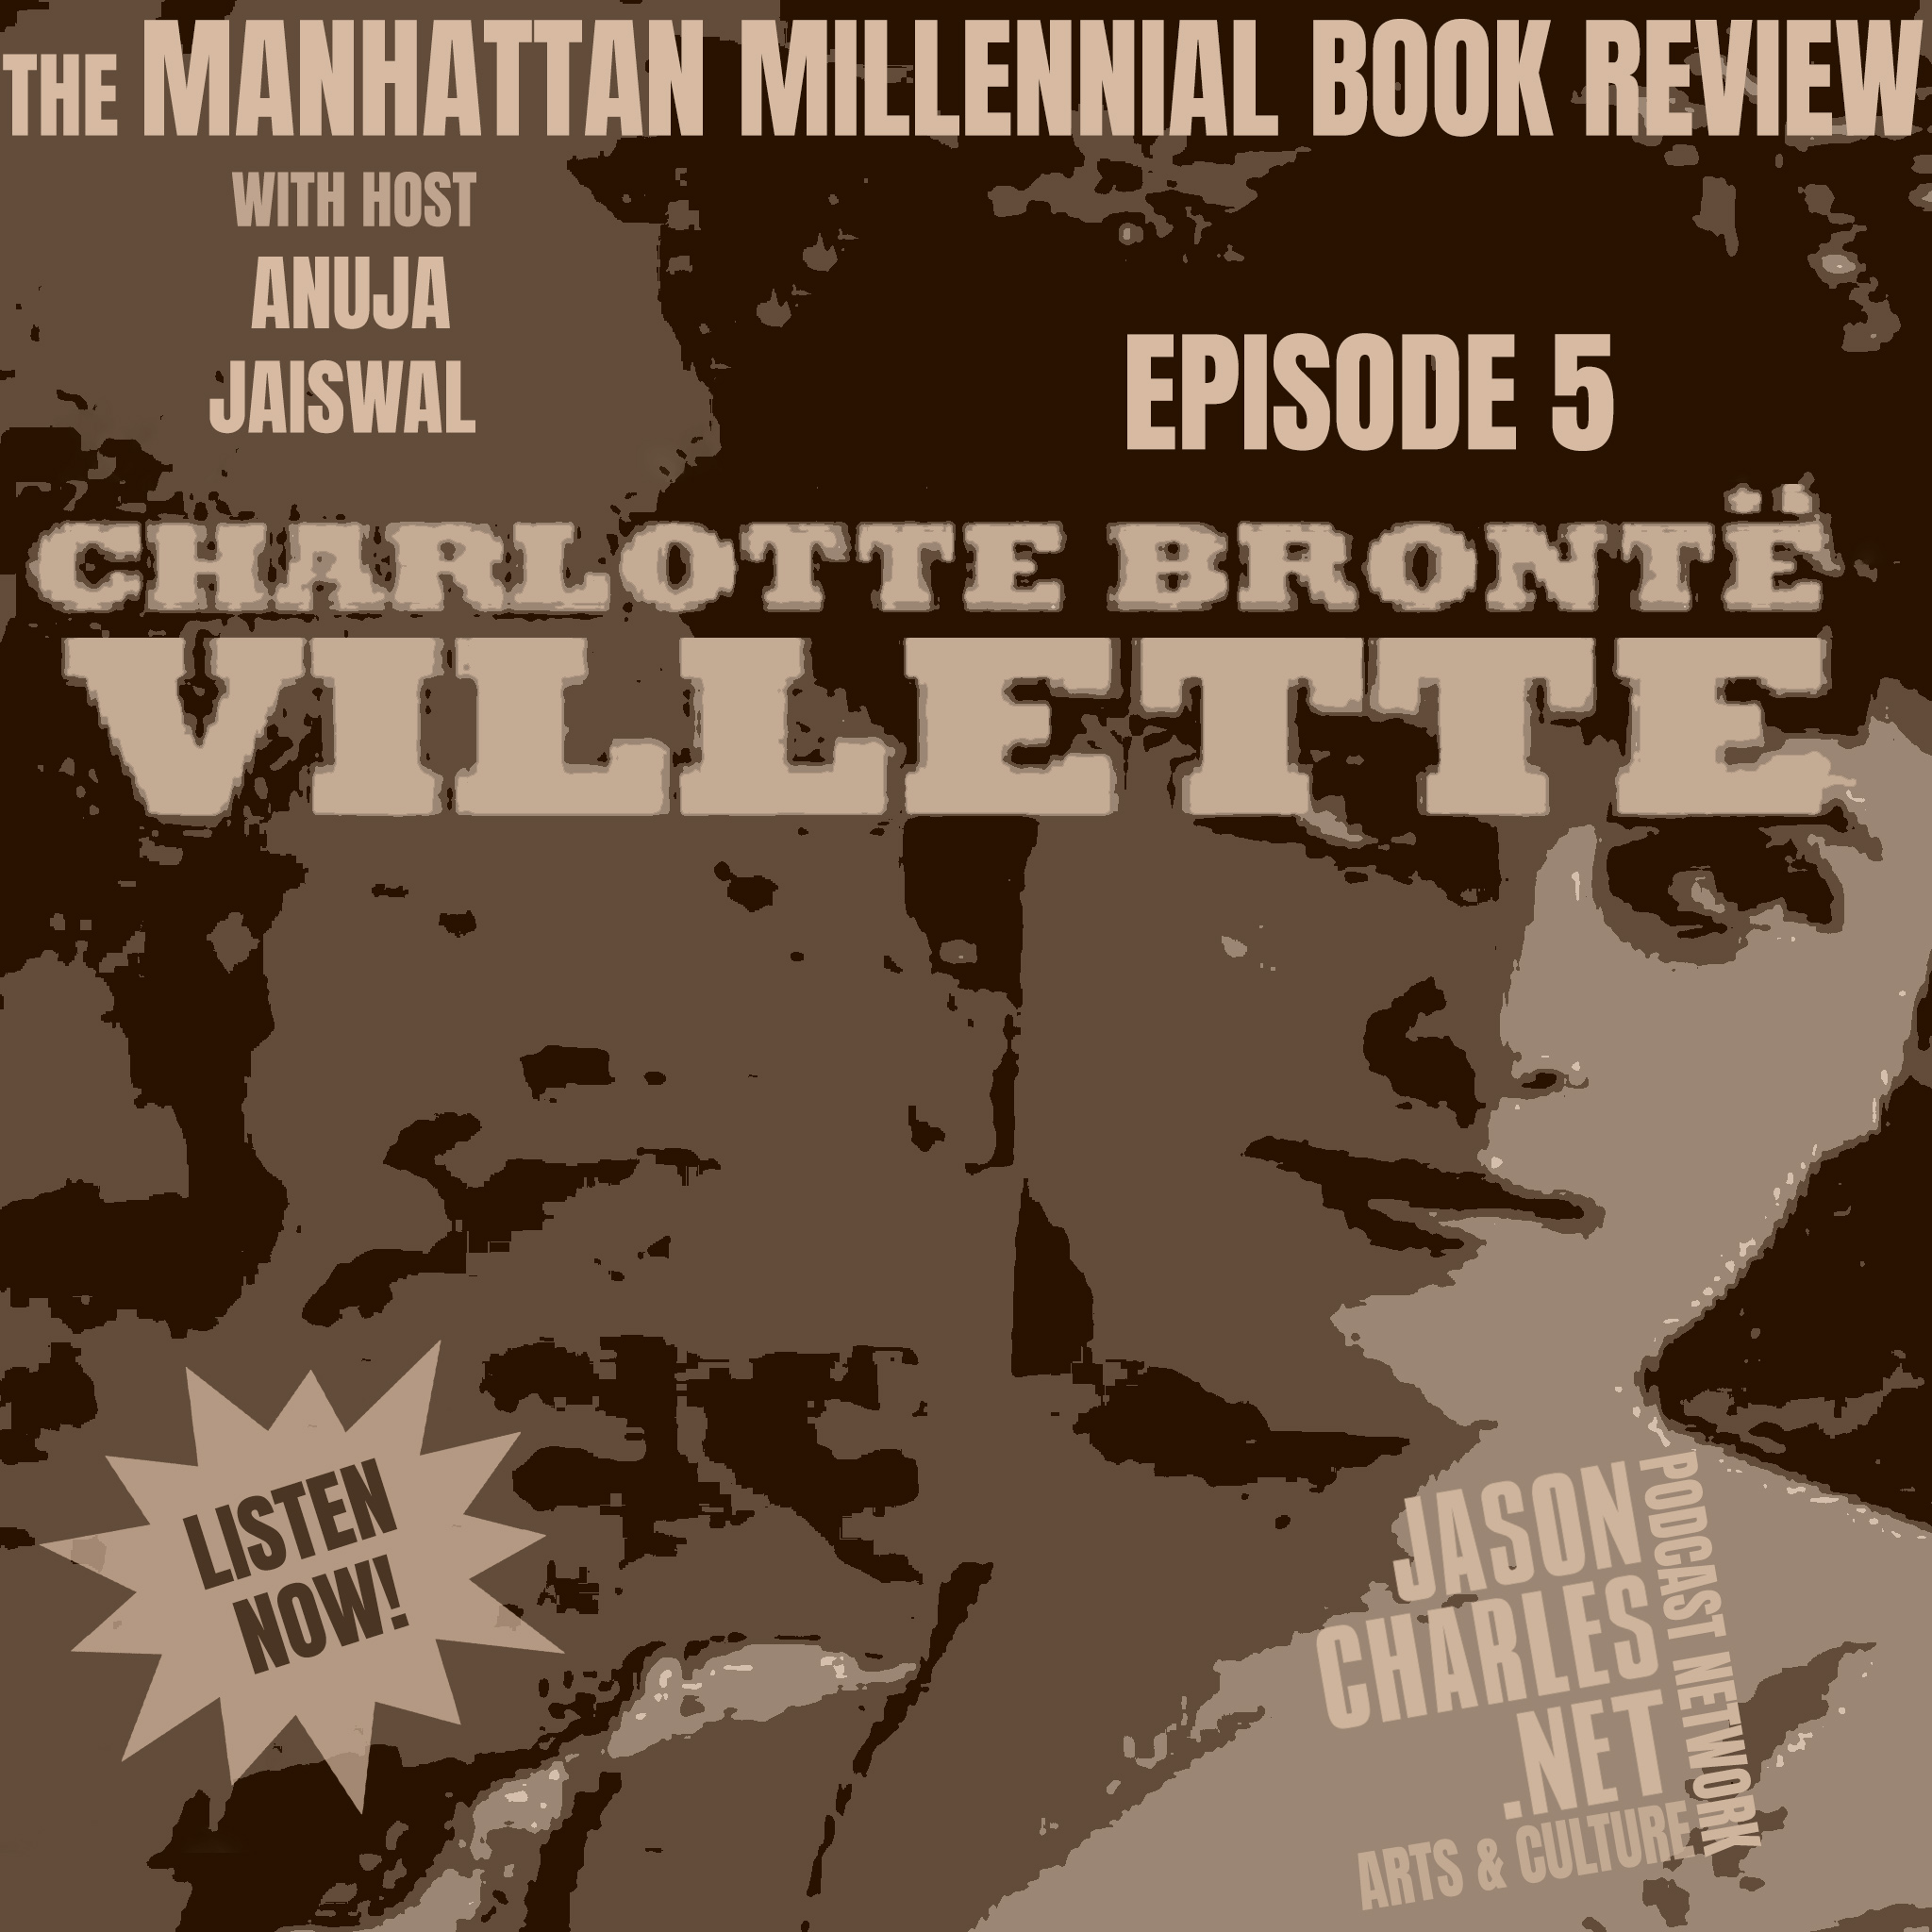 THE MANHATTAN MILLENNIAL BOOK REVIEW Episode 5 Villette